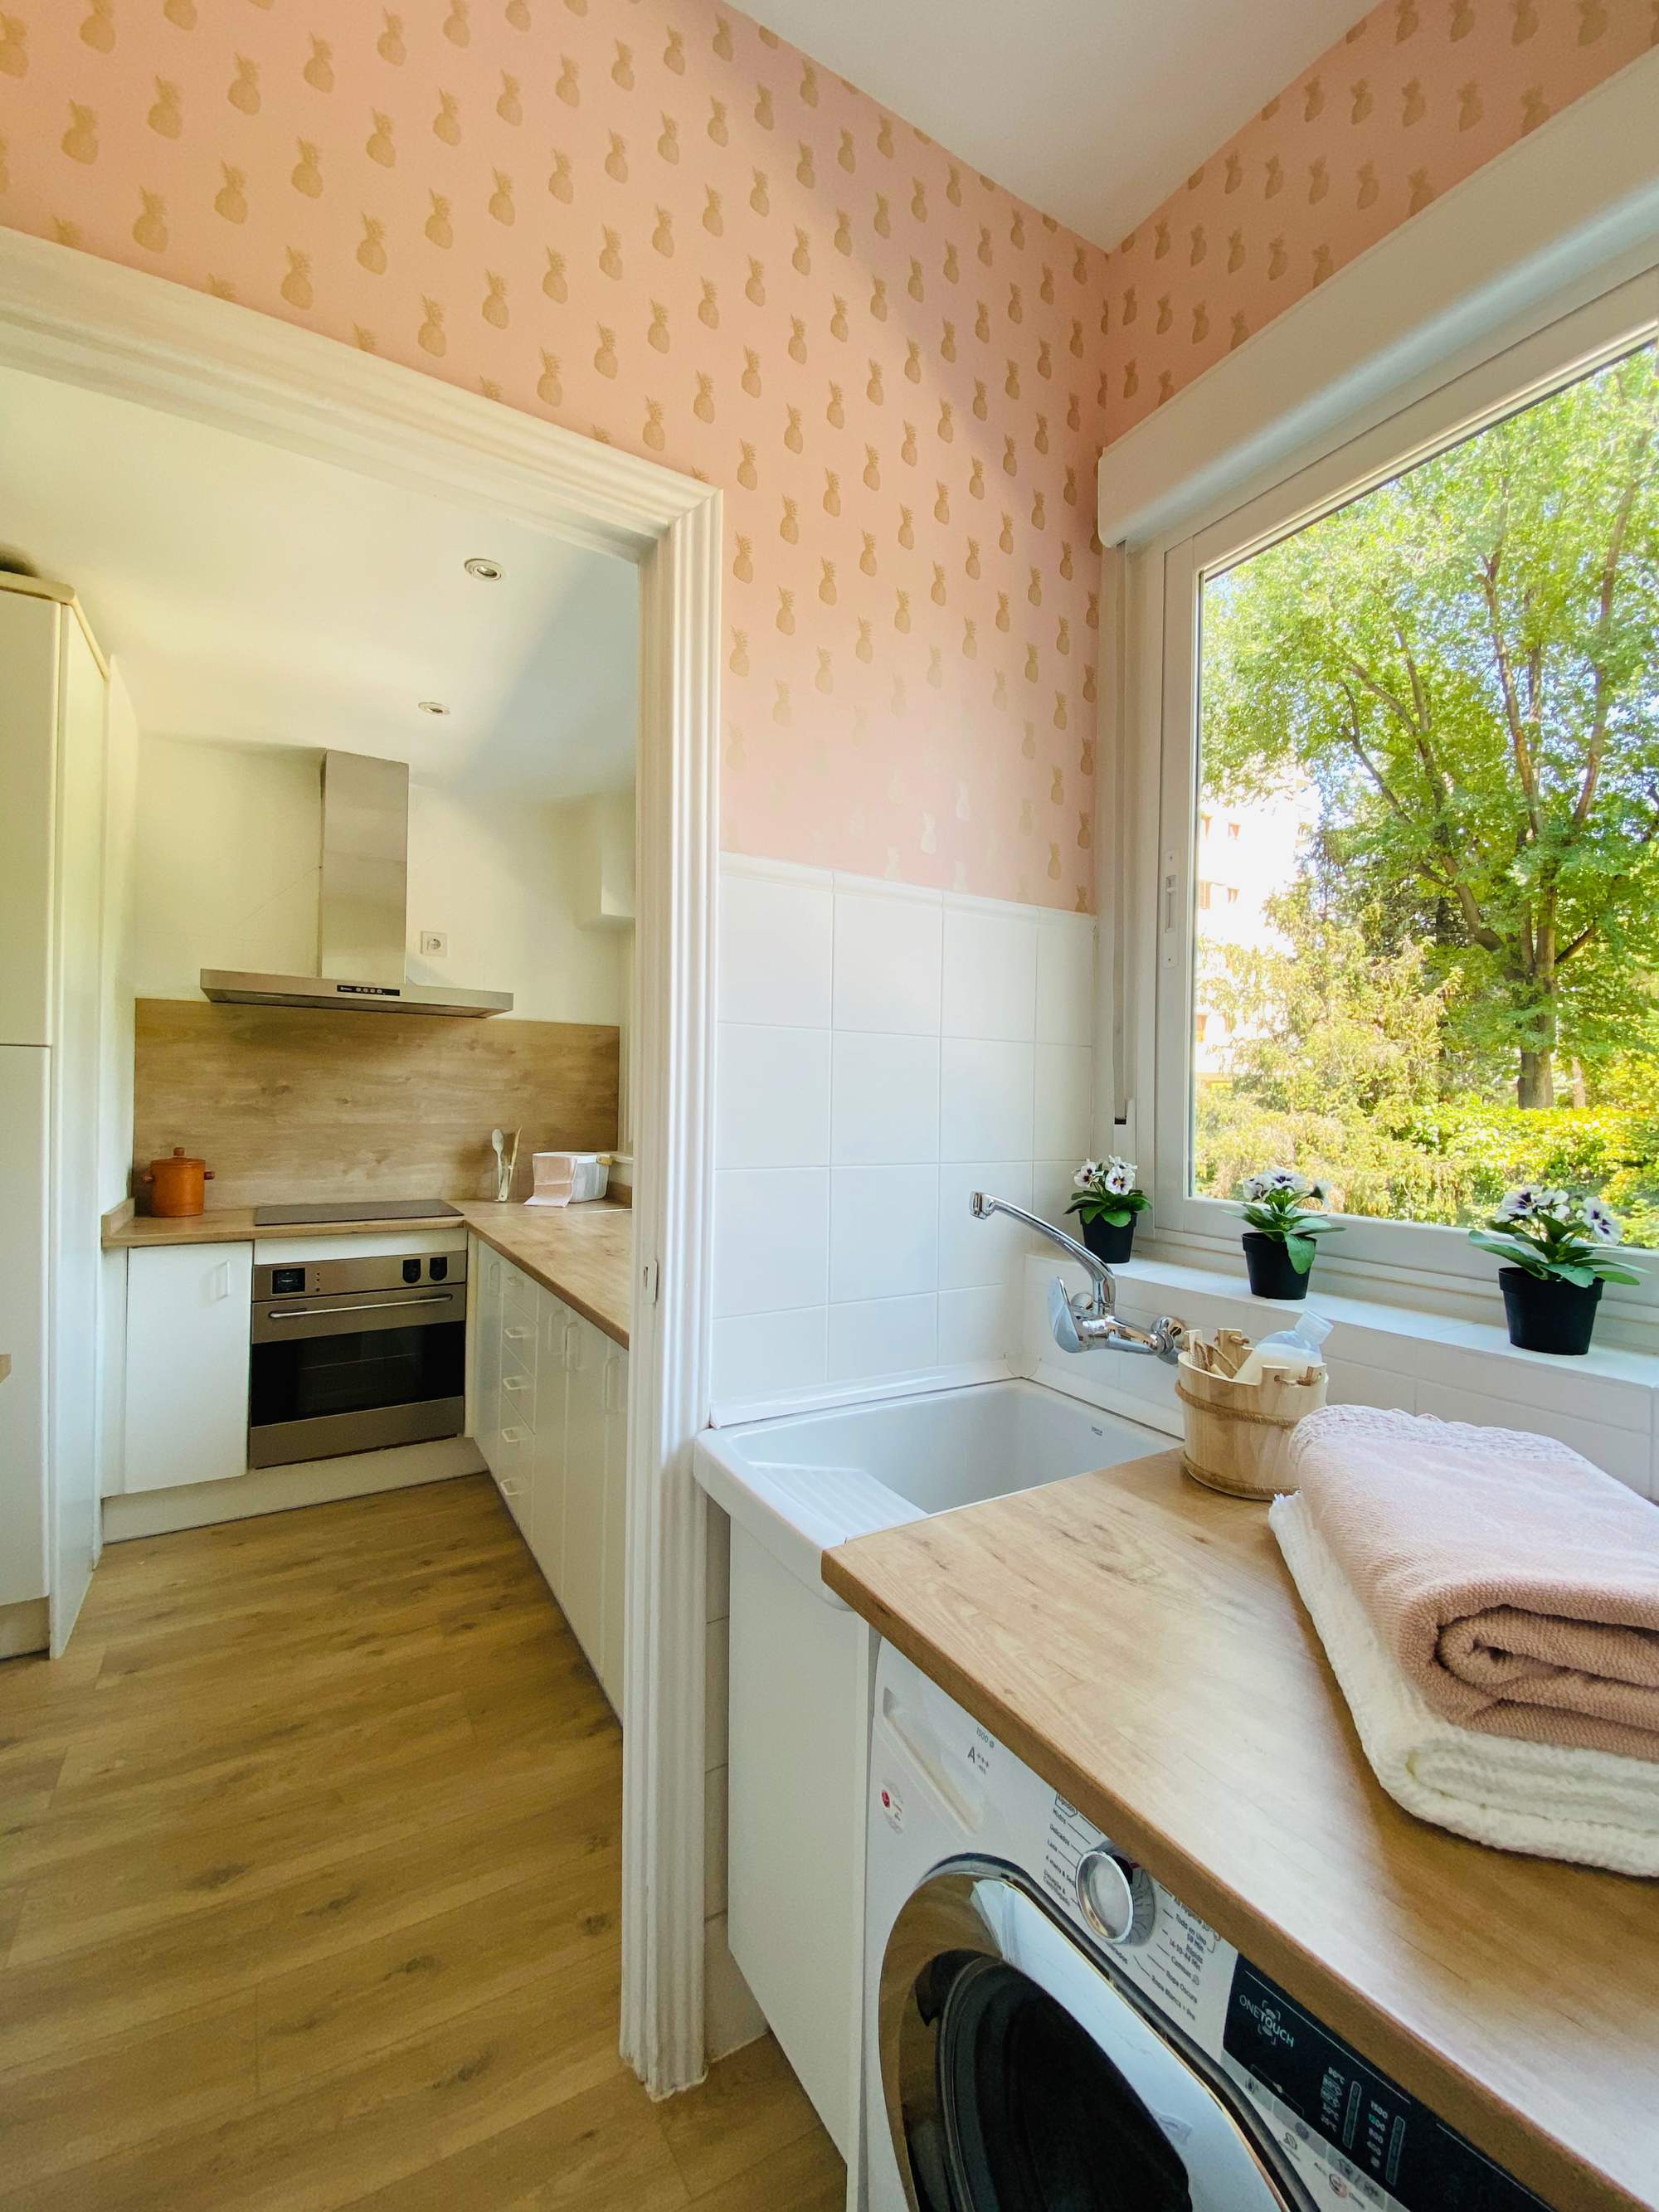 Cocina con arrimadero, zona de lavado, papel pintado rosa y encimeras, de madera.